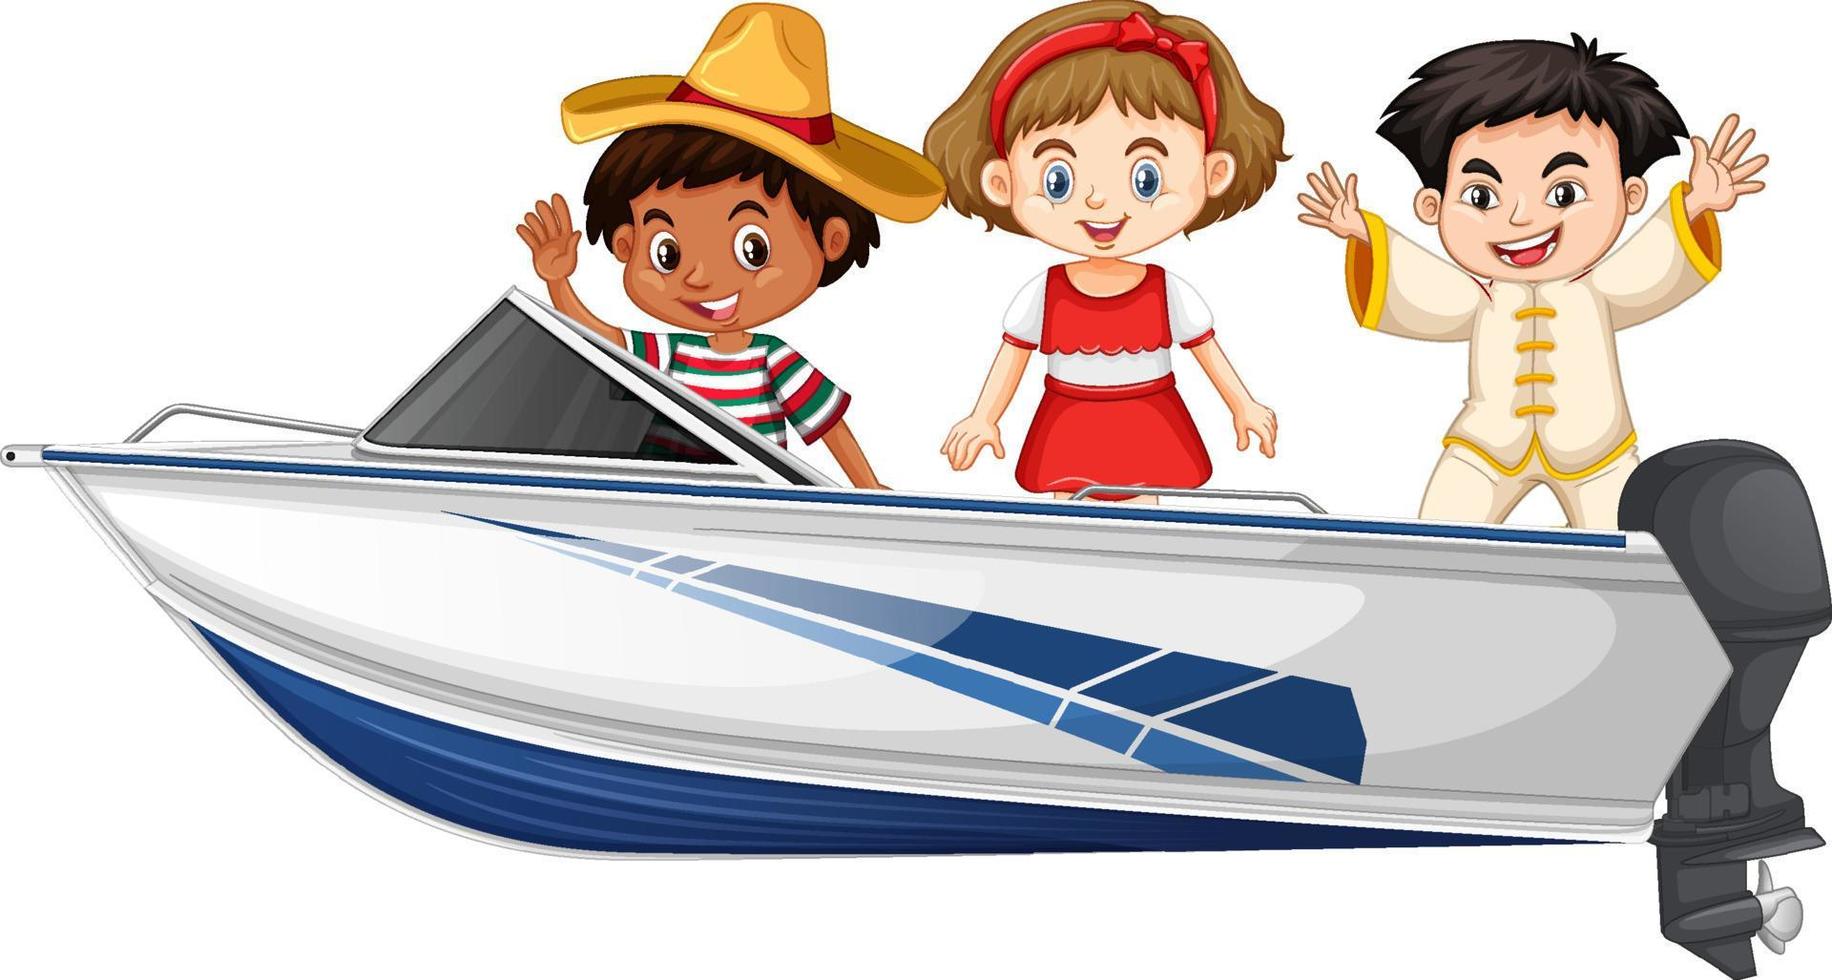 pojke och flicka står på en speedbåt på en vit bakgrund vektor